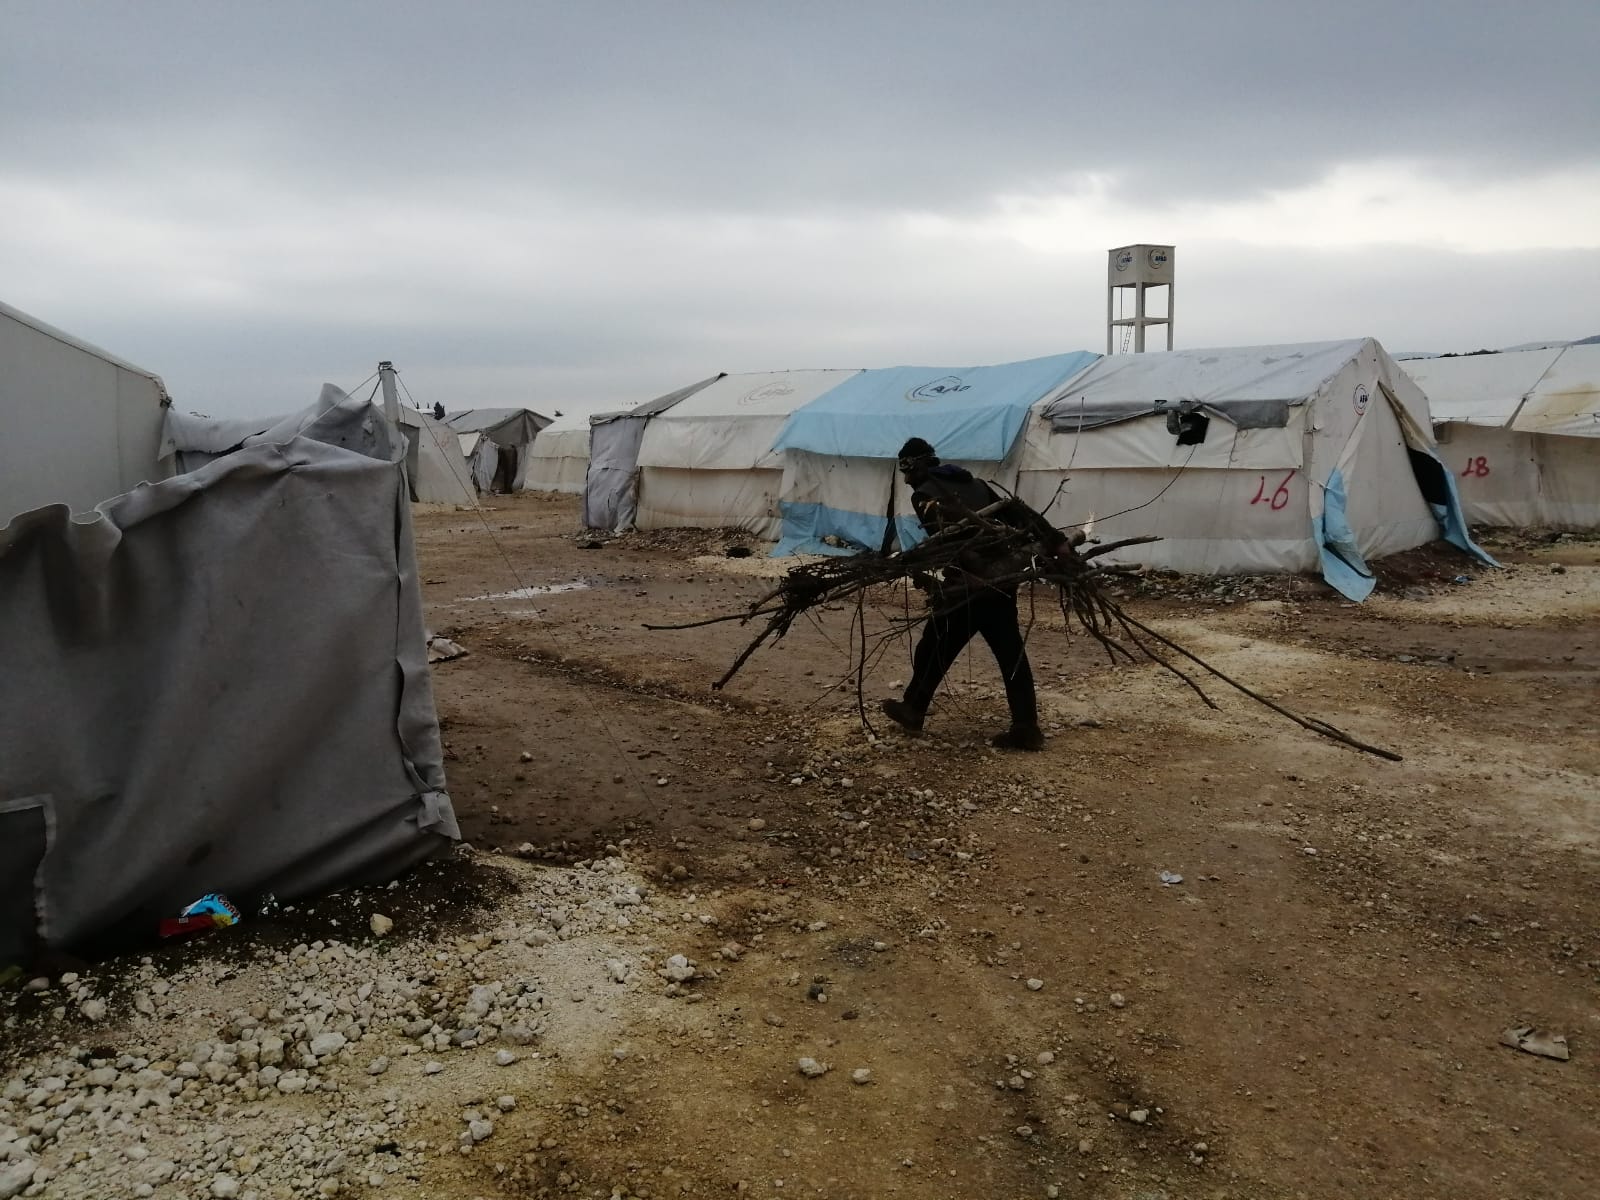 شاهد: إلى متى تستمر معاناة المهجرين الفلسطينيين في مخيم دير بلوط 